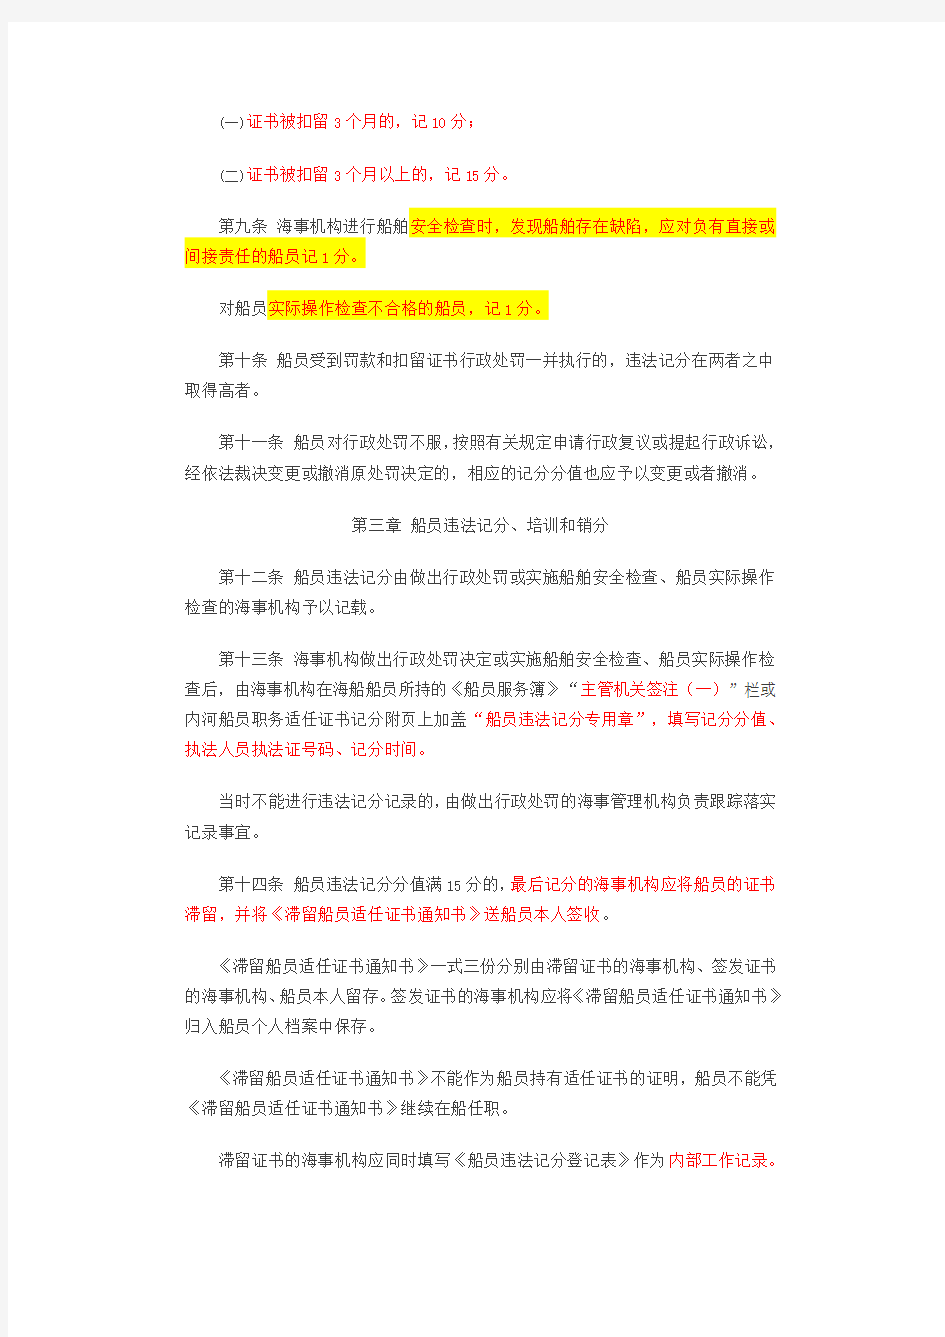 中华人民共和国船员违法记分管理办法